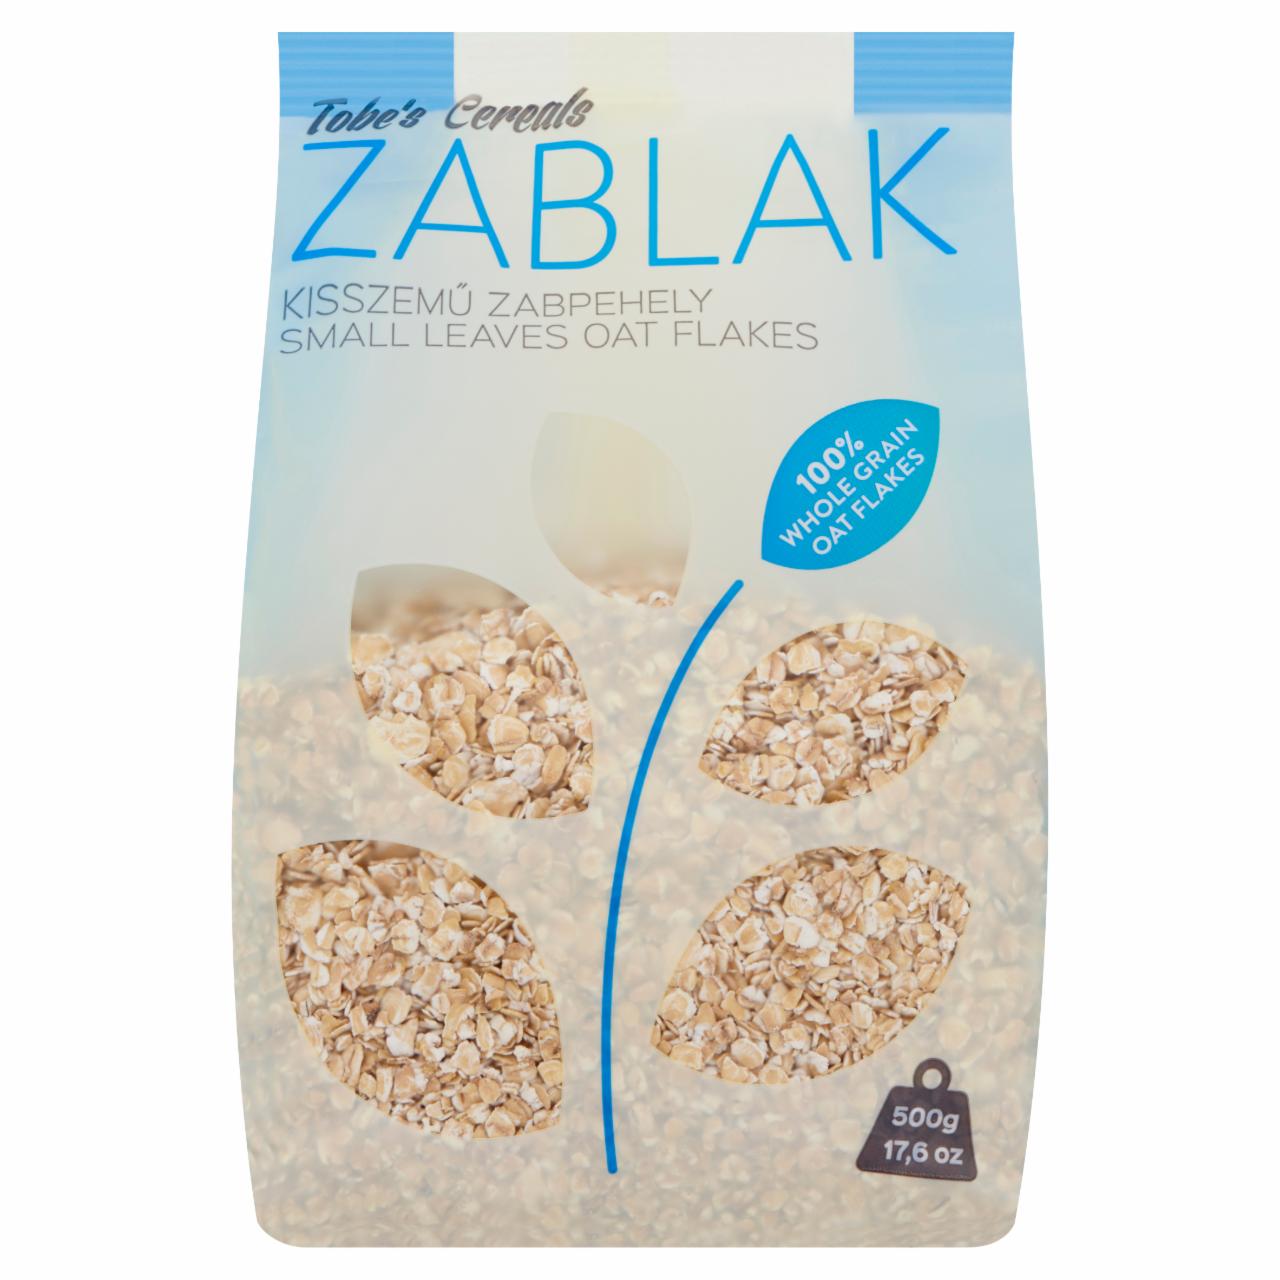 Képek - Tobe's Cereals Zablak kisszemű natúr zabpehely 500 g